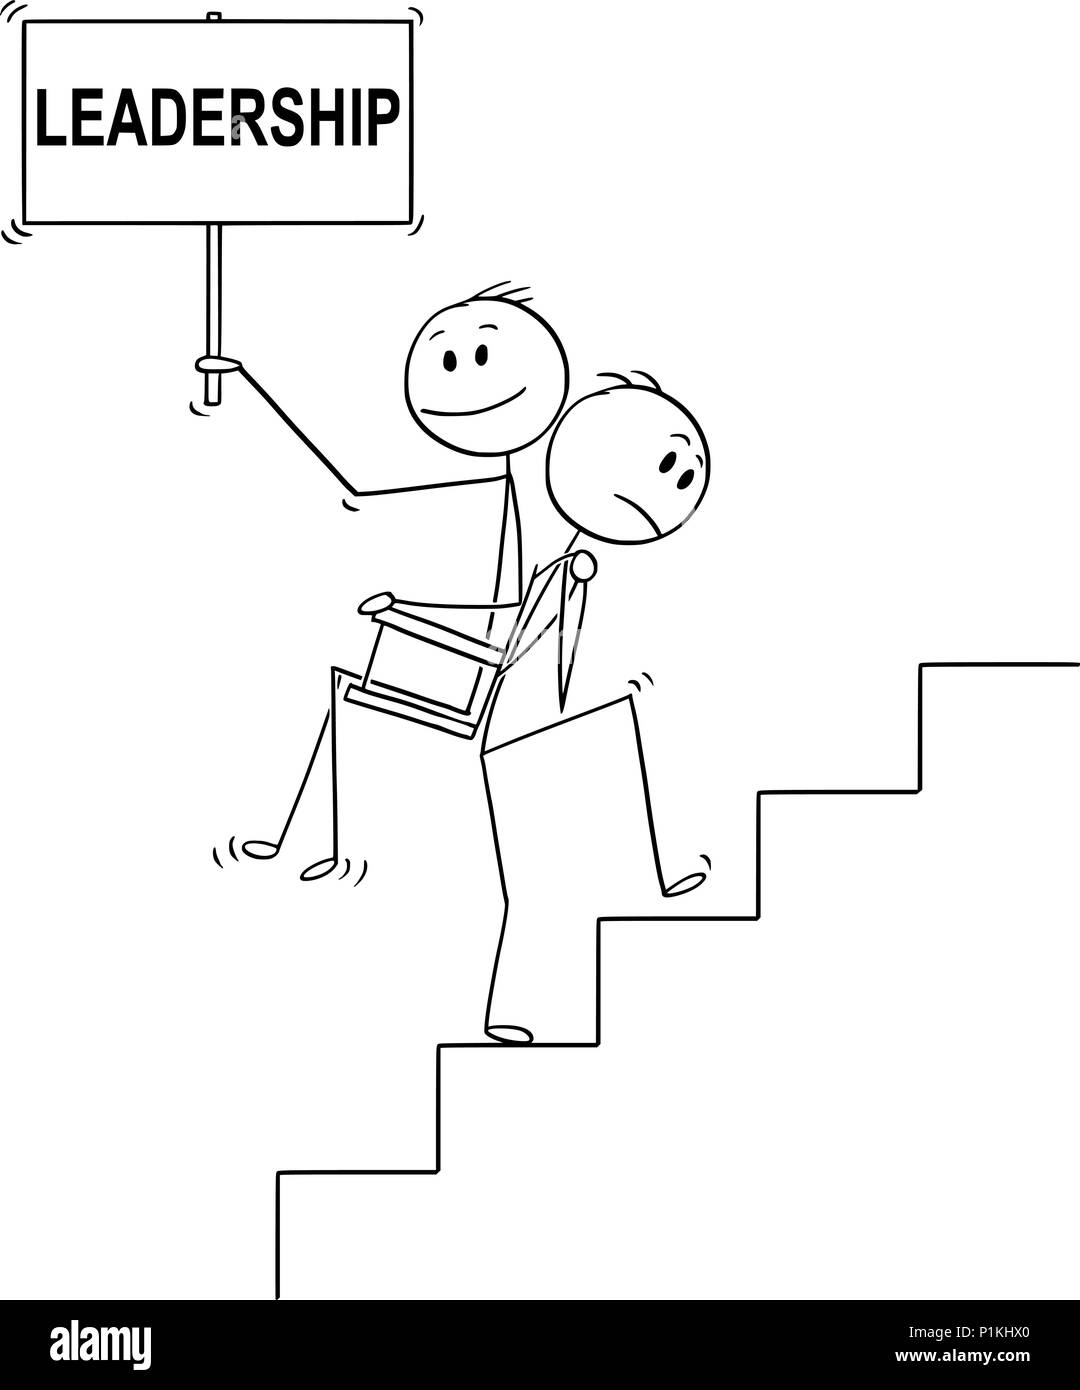 Caricature de l'homme ou homme transportant un autre homme ou à visser à l'étage signe de leadership Illustration de Vecteur